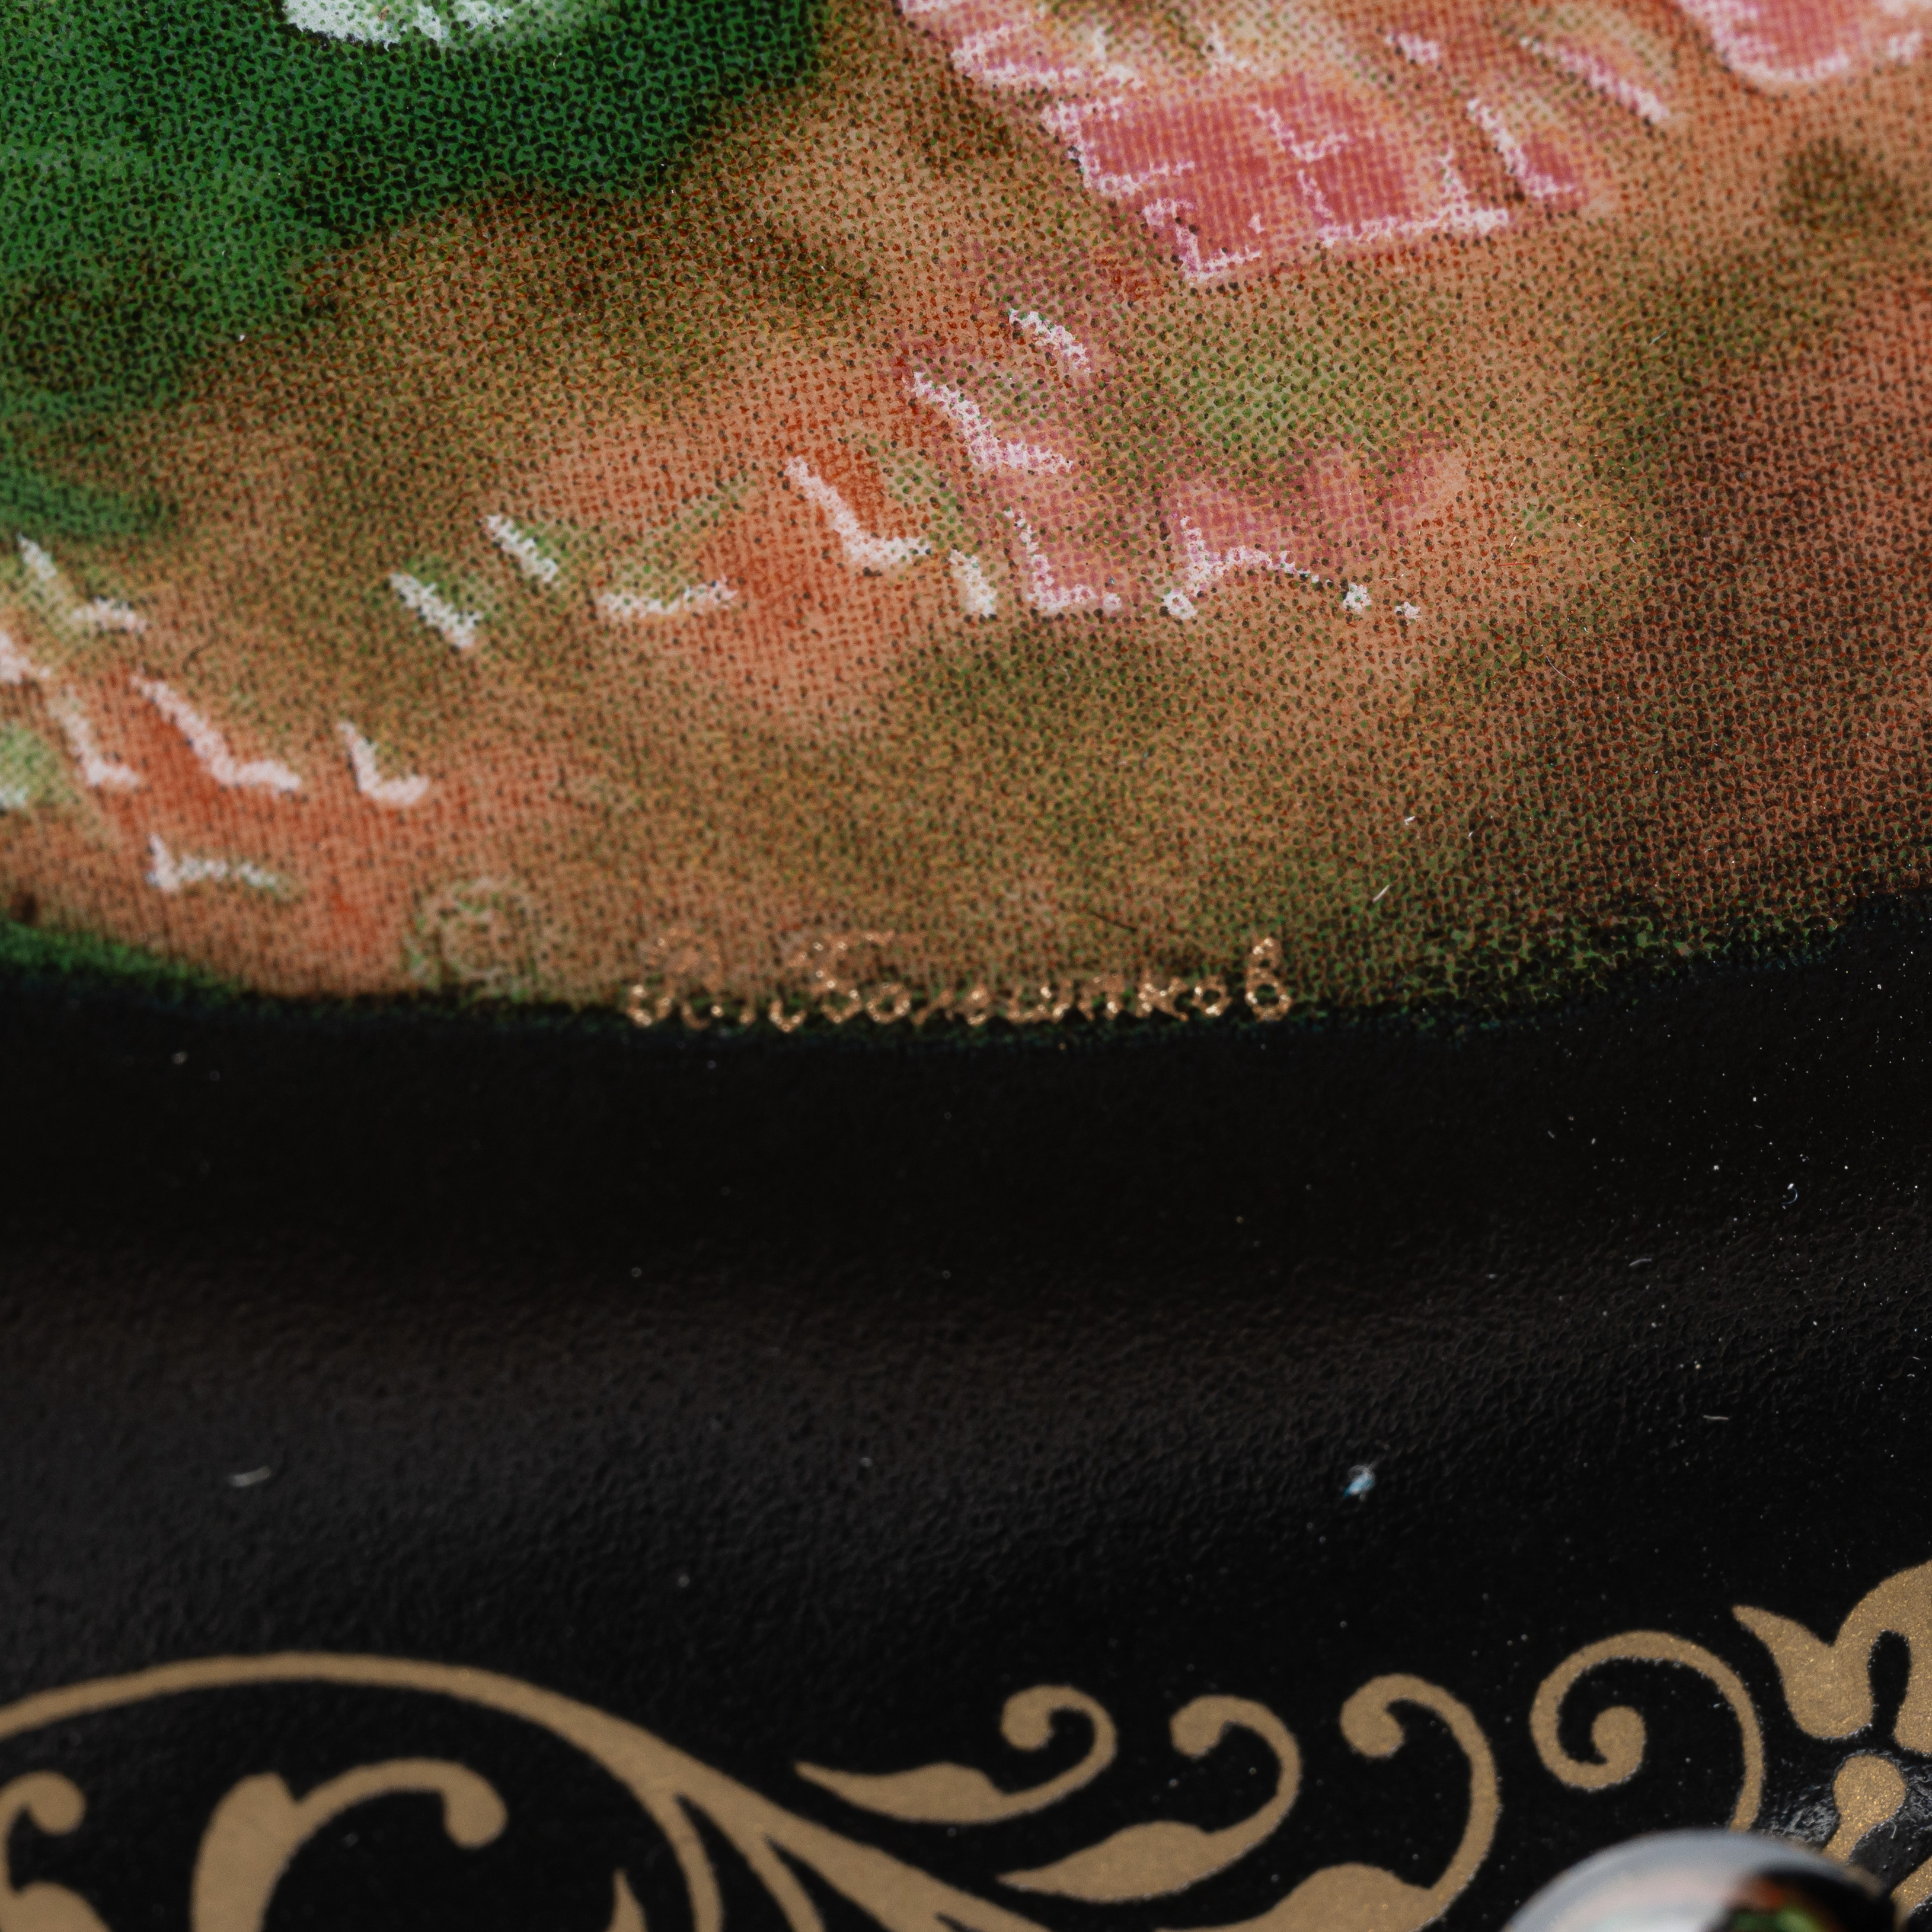 Декоративная тарелка «Каменный цветок» из серии «Русские сказки».<br> СССР, Ленинградский фарфоровый завод под брендом «Виноградовский фарфор», художник – В. Большаков, 1990.